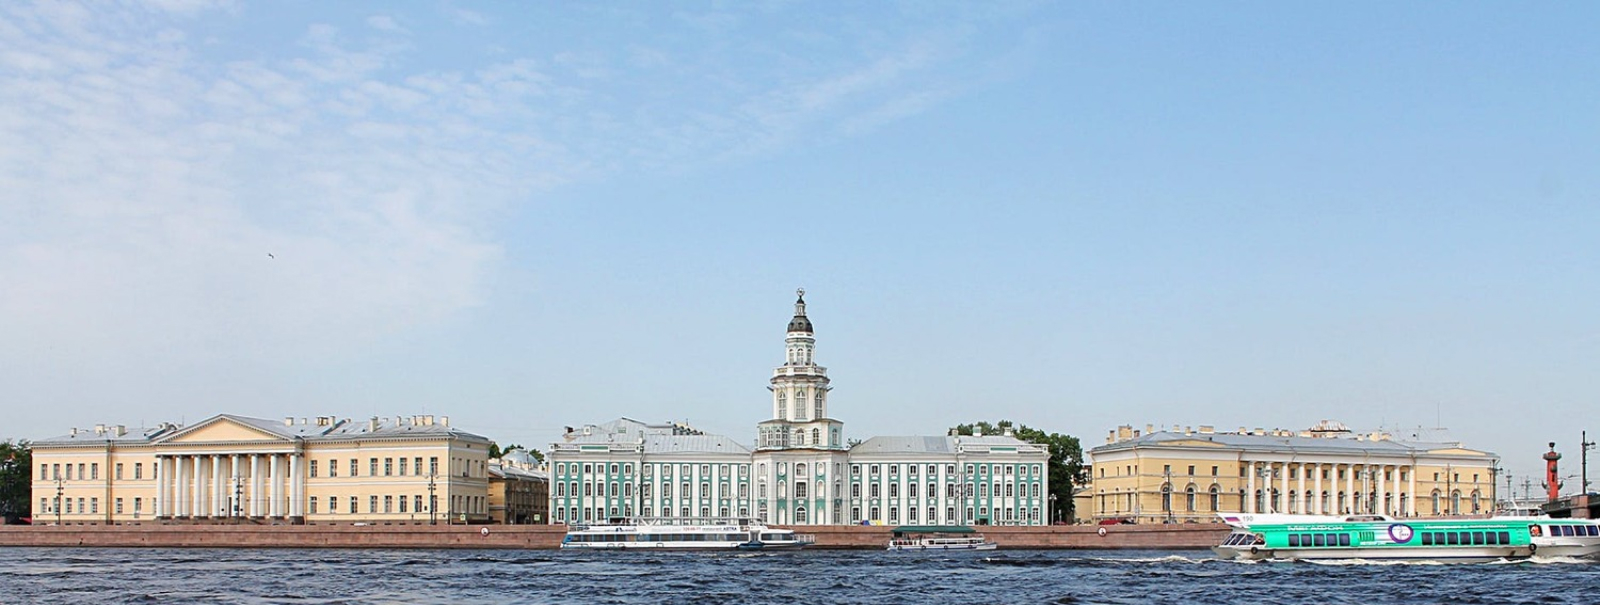 Экскурсии со скидками в Санкт-Петербурге